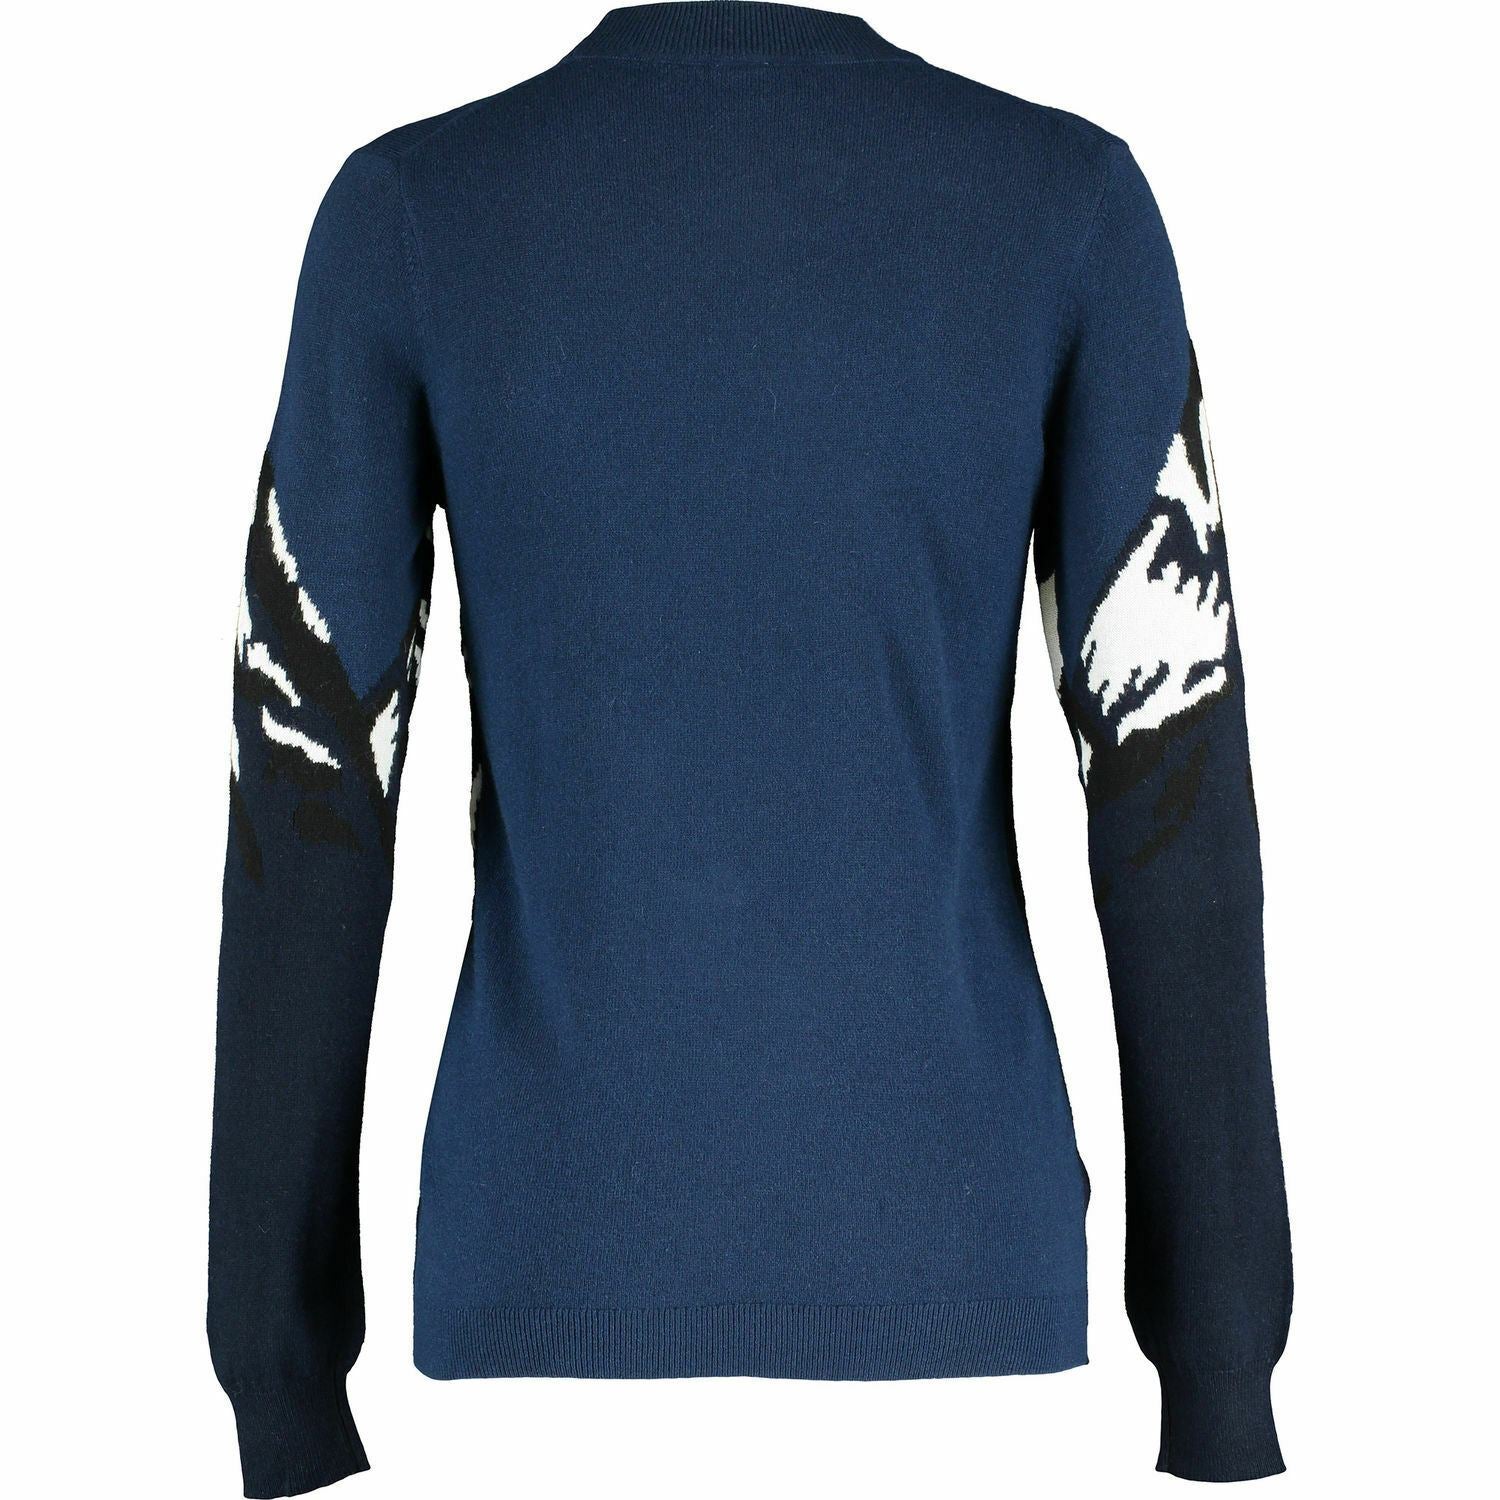 LACOSTE L!VE Women's Mountain Design Wool Blend Jumper, Blue, size XS